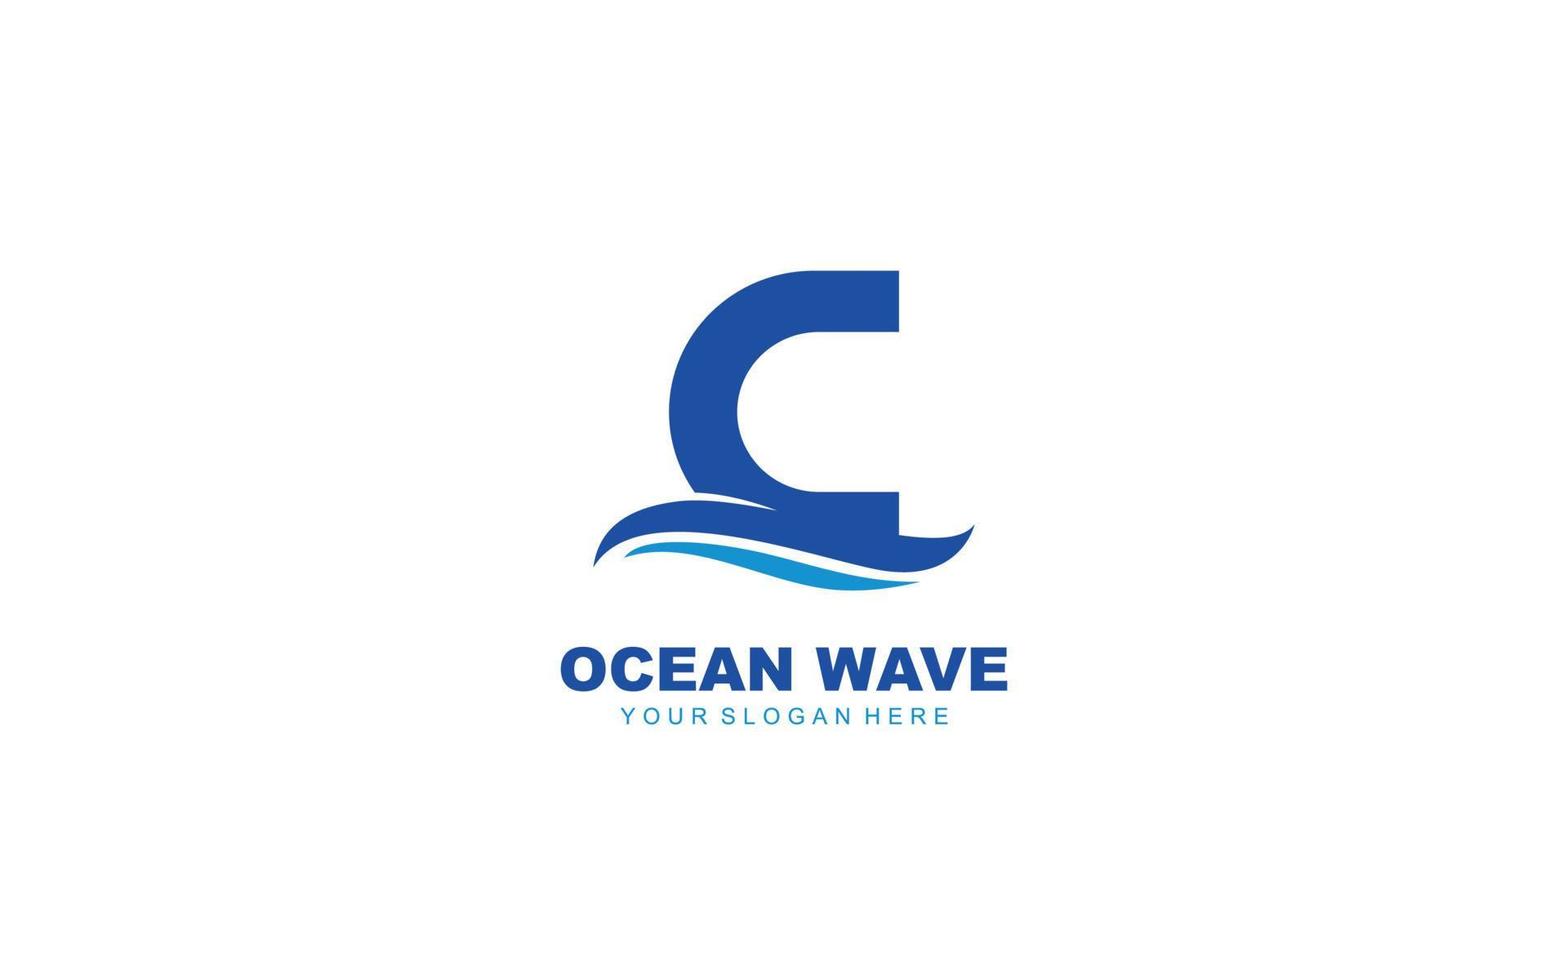 C WAVE logo design inspiration. Vector letter template design for brand.